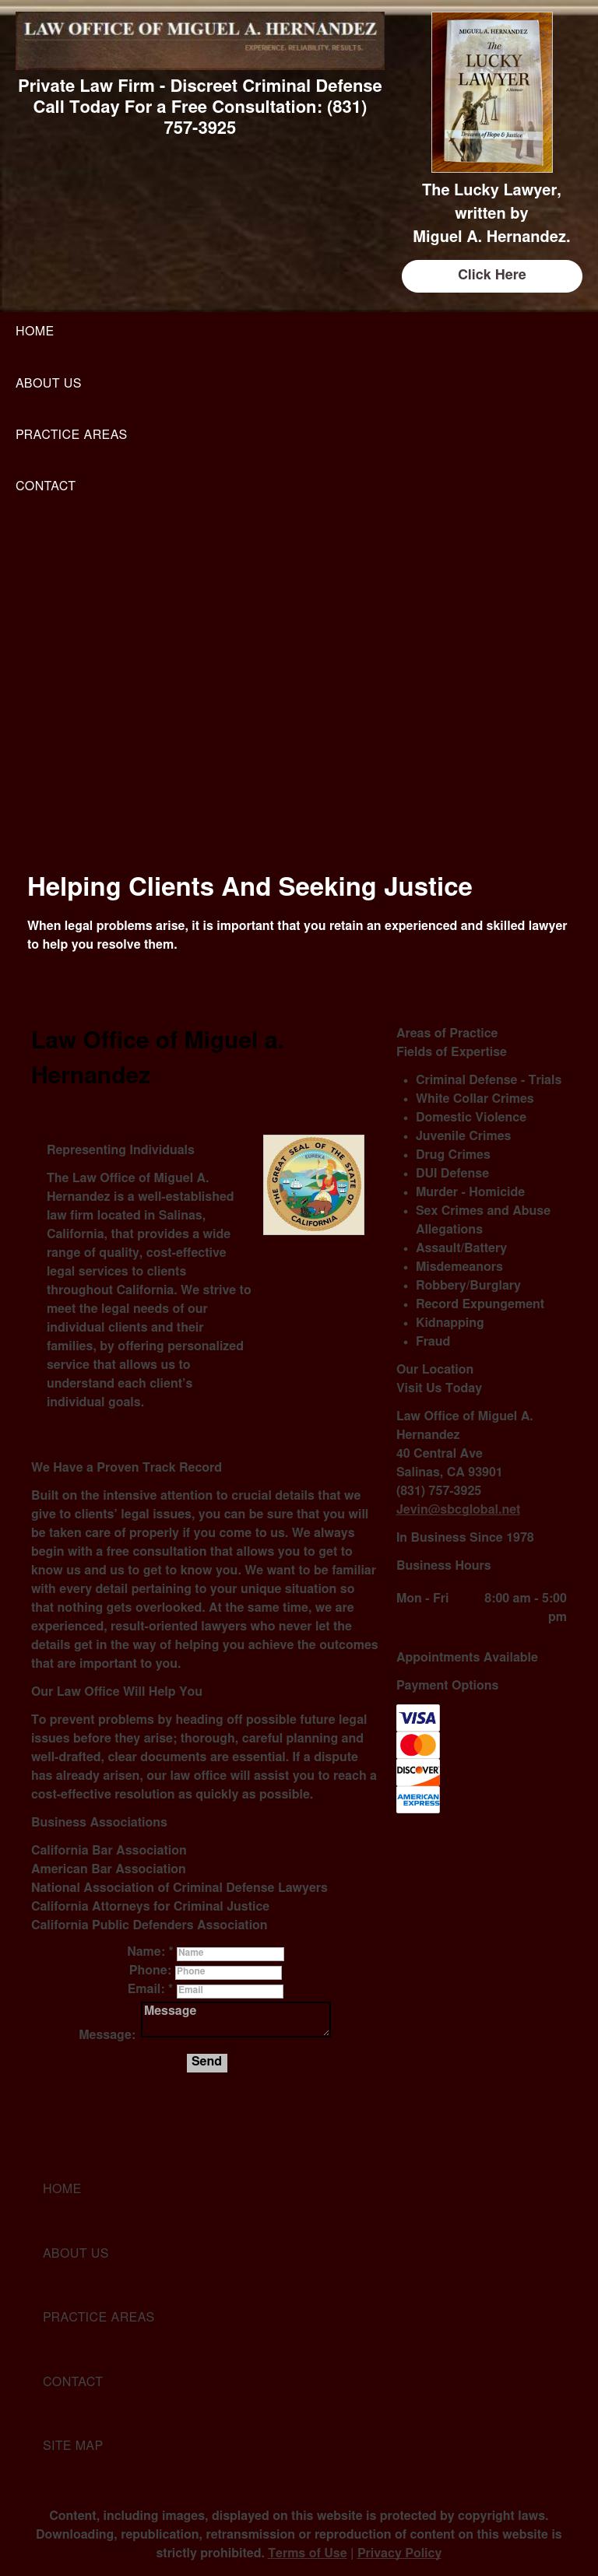 Hernandez Miguel A Criminal Defense Attorney - Salinas CA Lawyers